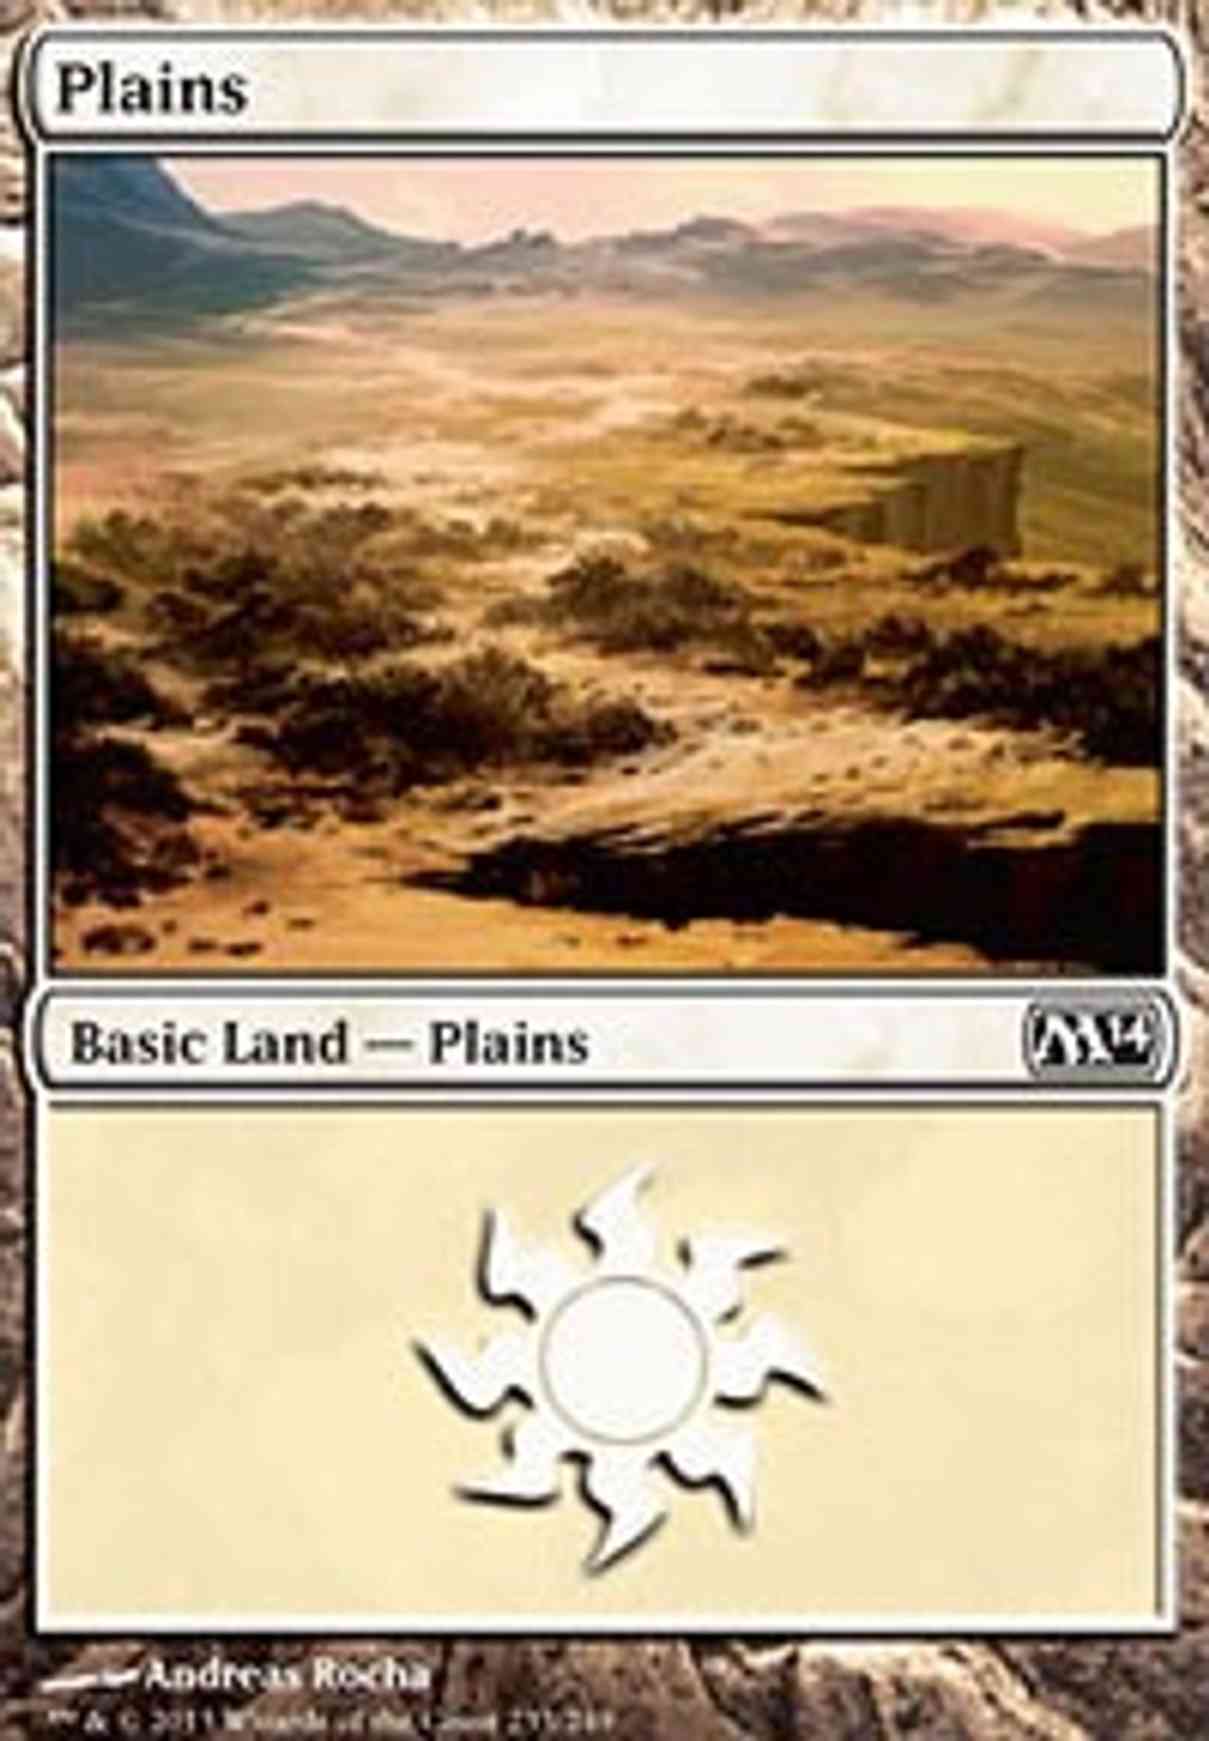 Plains (233) magic card front